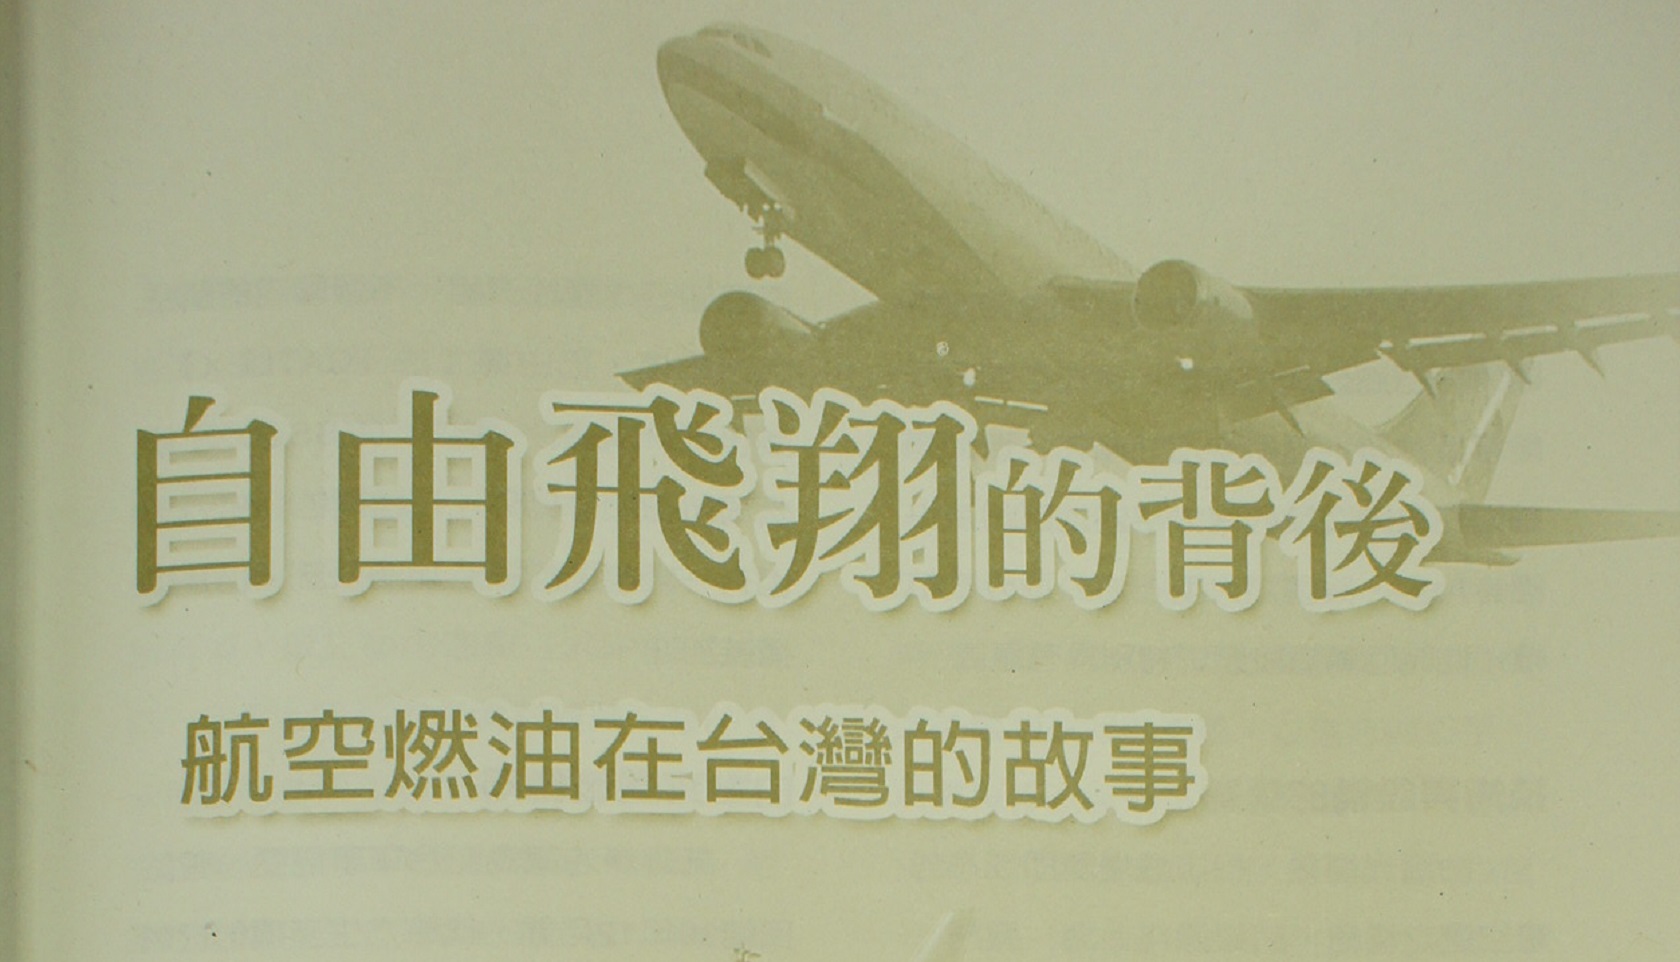 自由飛翔的背後——航空燃油在台灣的故事